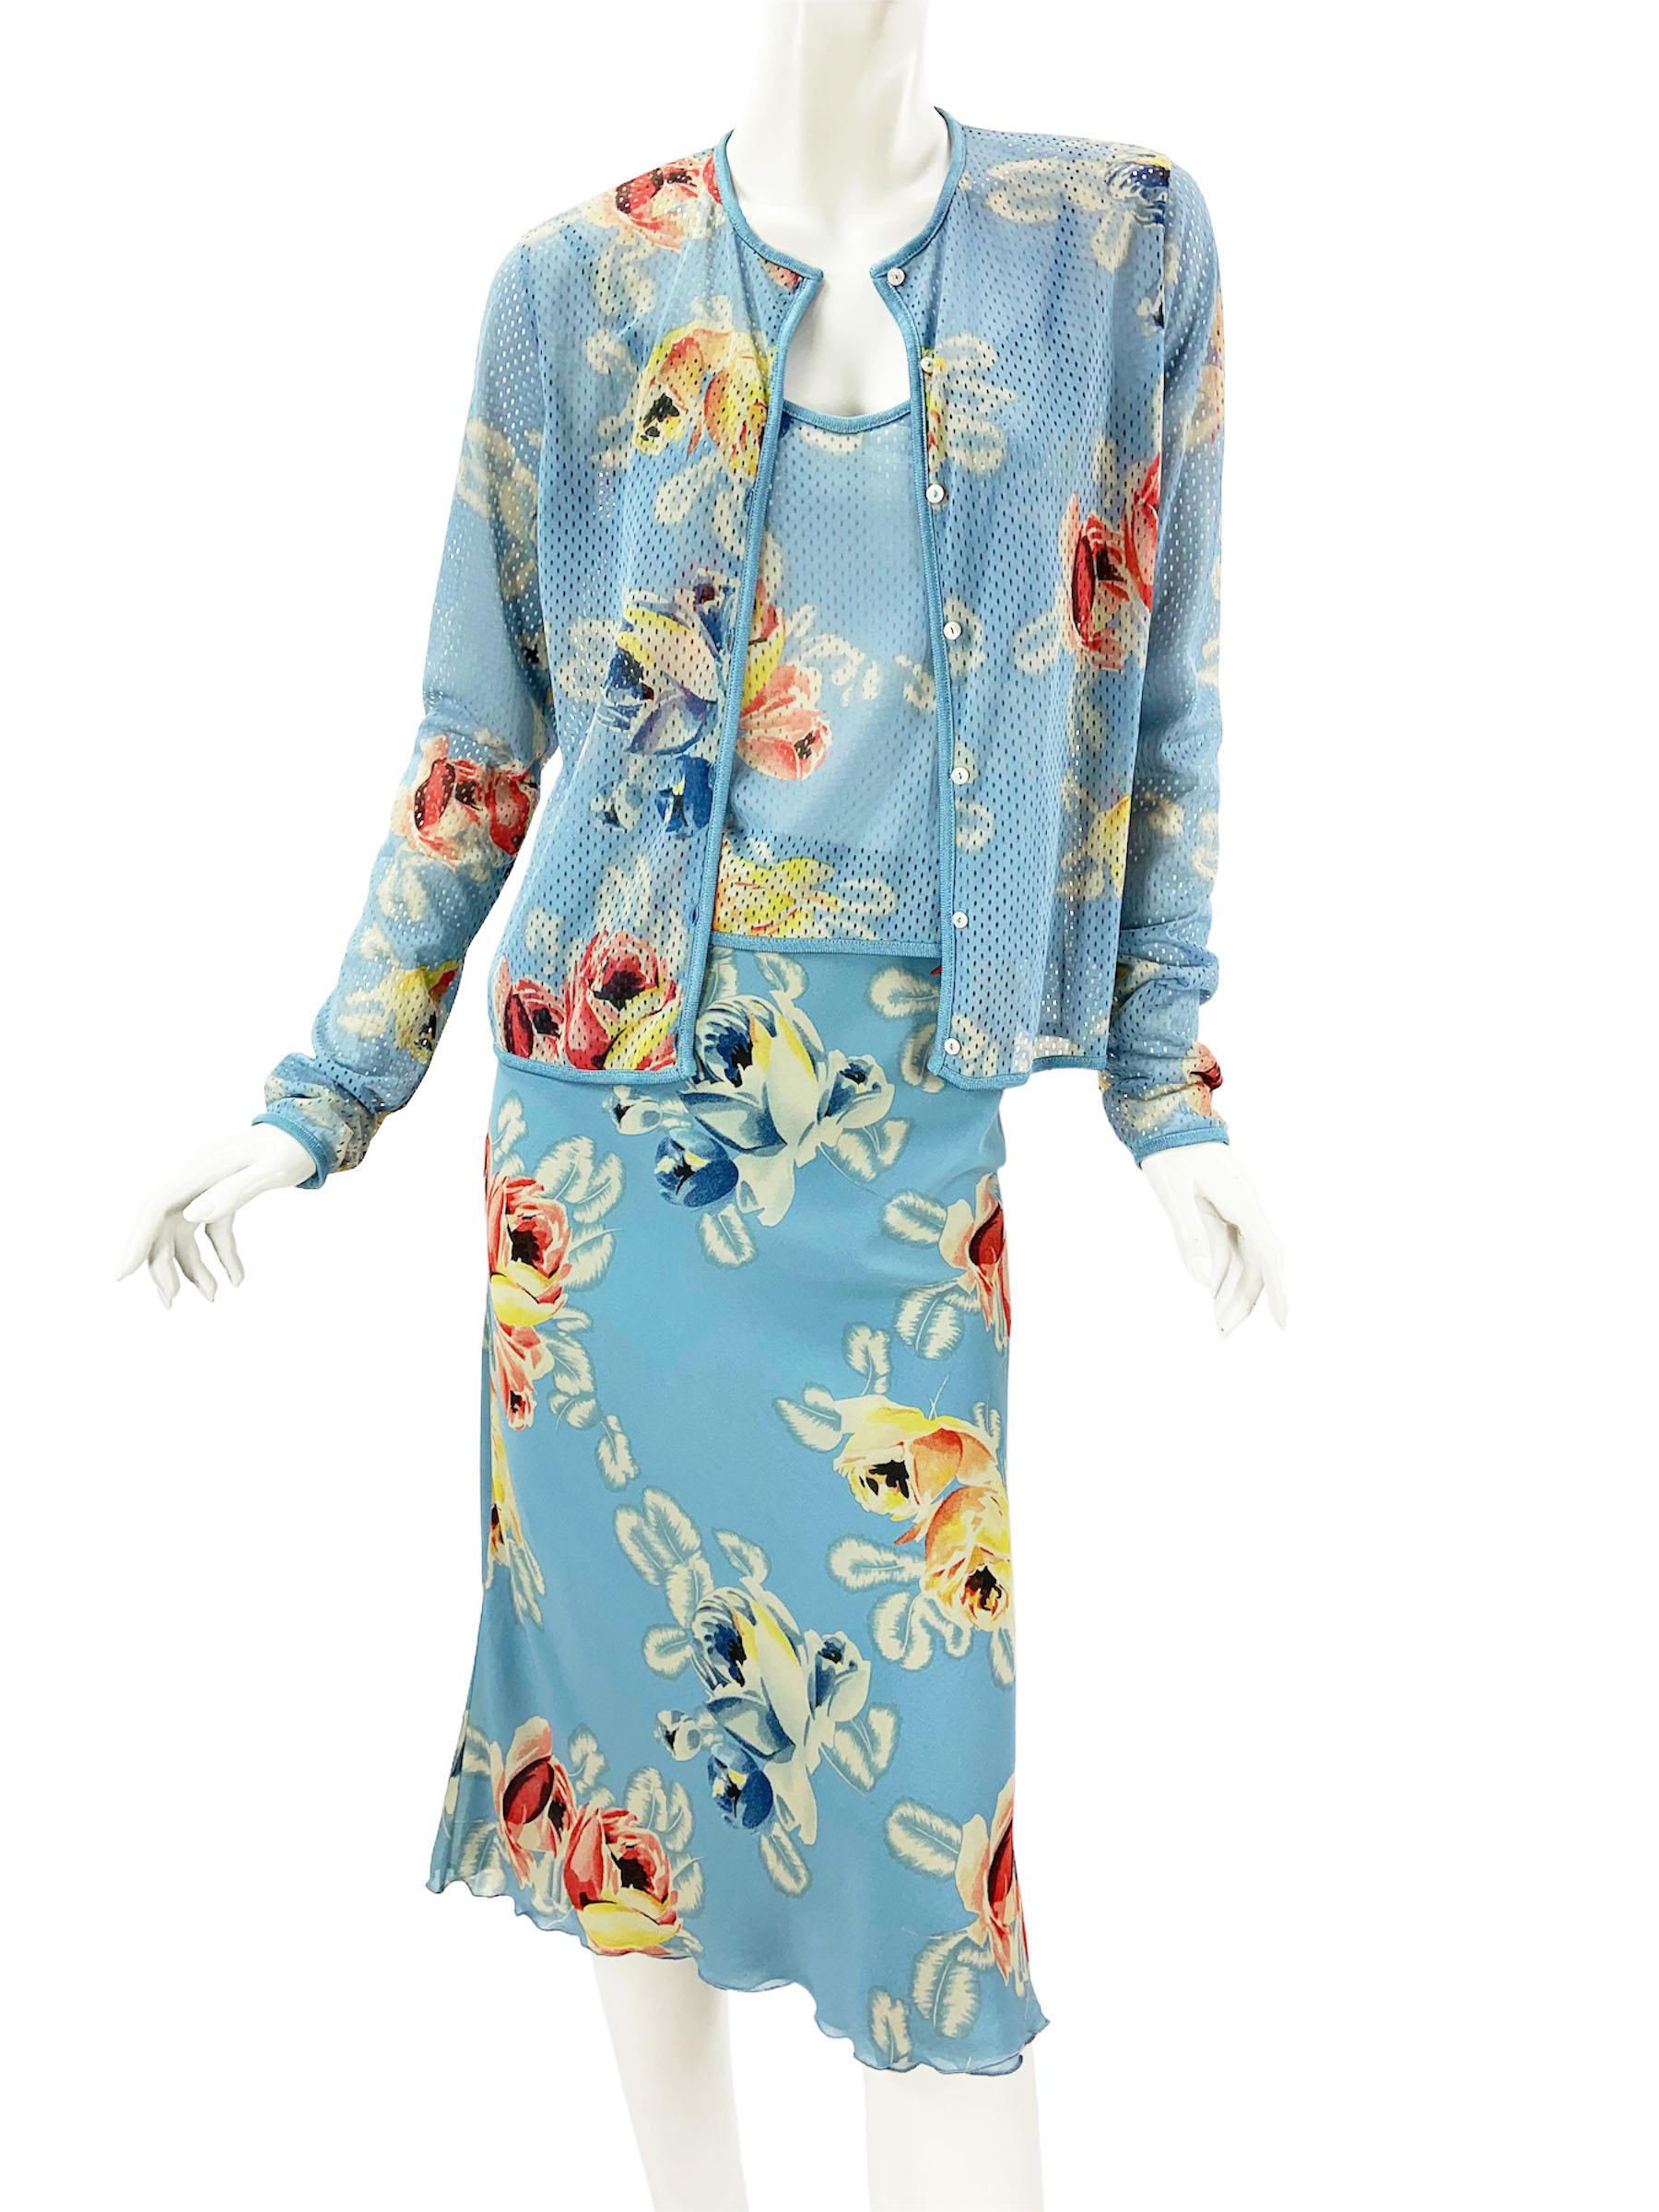 Christian Dior by John Galliano Silk Blue Flower Print 3 pc Skirt Set
Collection S/S 2001
Taille 42 - US 10 - UK 14
Veste et top cami imprimés de fleurs bleues créés à partir d'un tissu perforé léger. 
Veste : longueur - 22 pouces, buste - 36/38